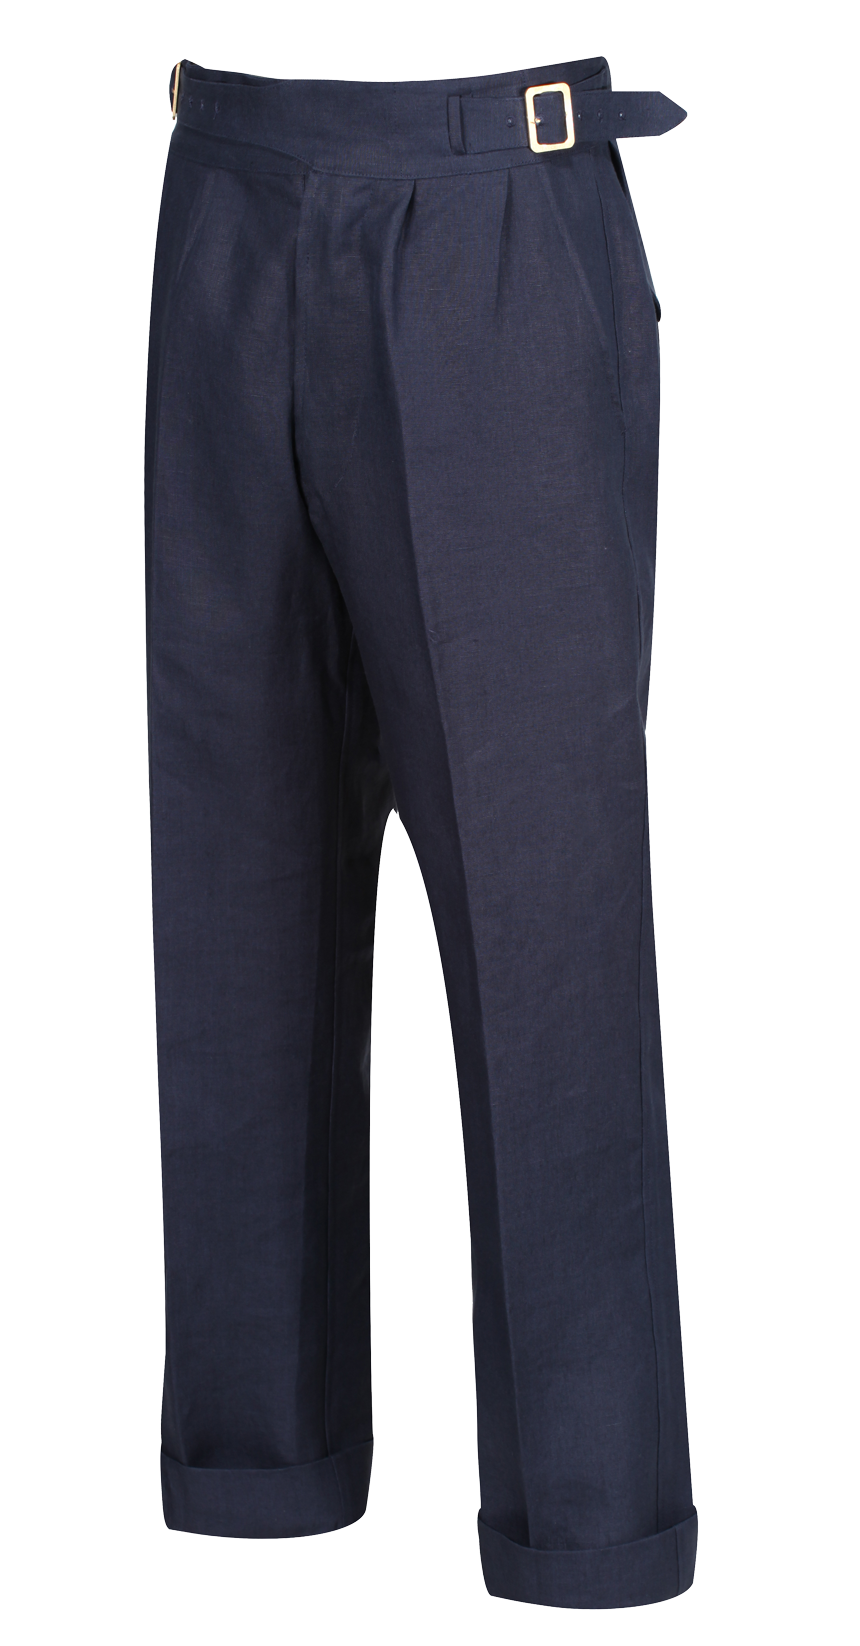 1940s Laszlo trouser in Navy Irish linen